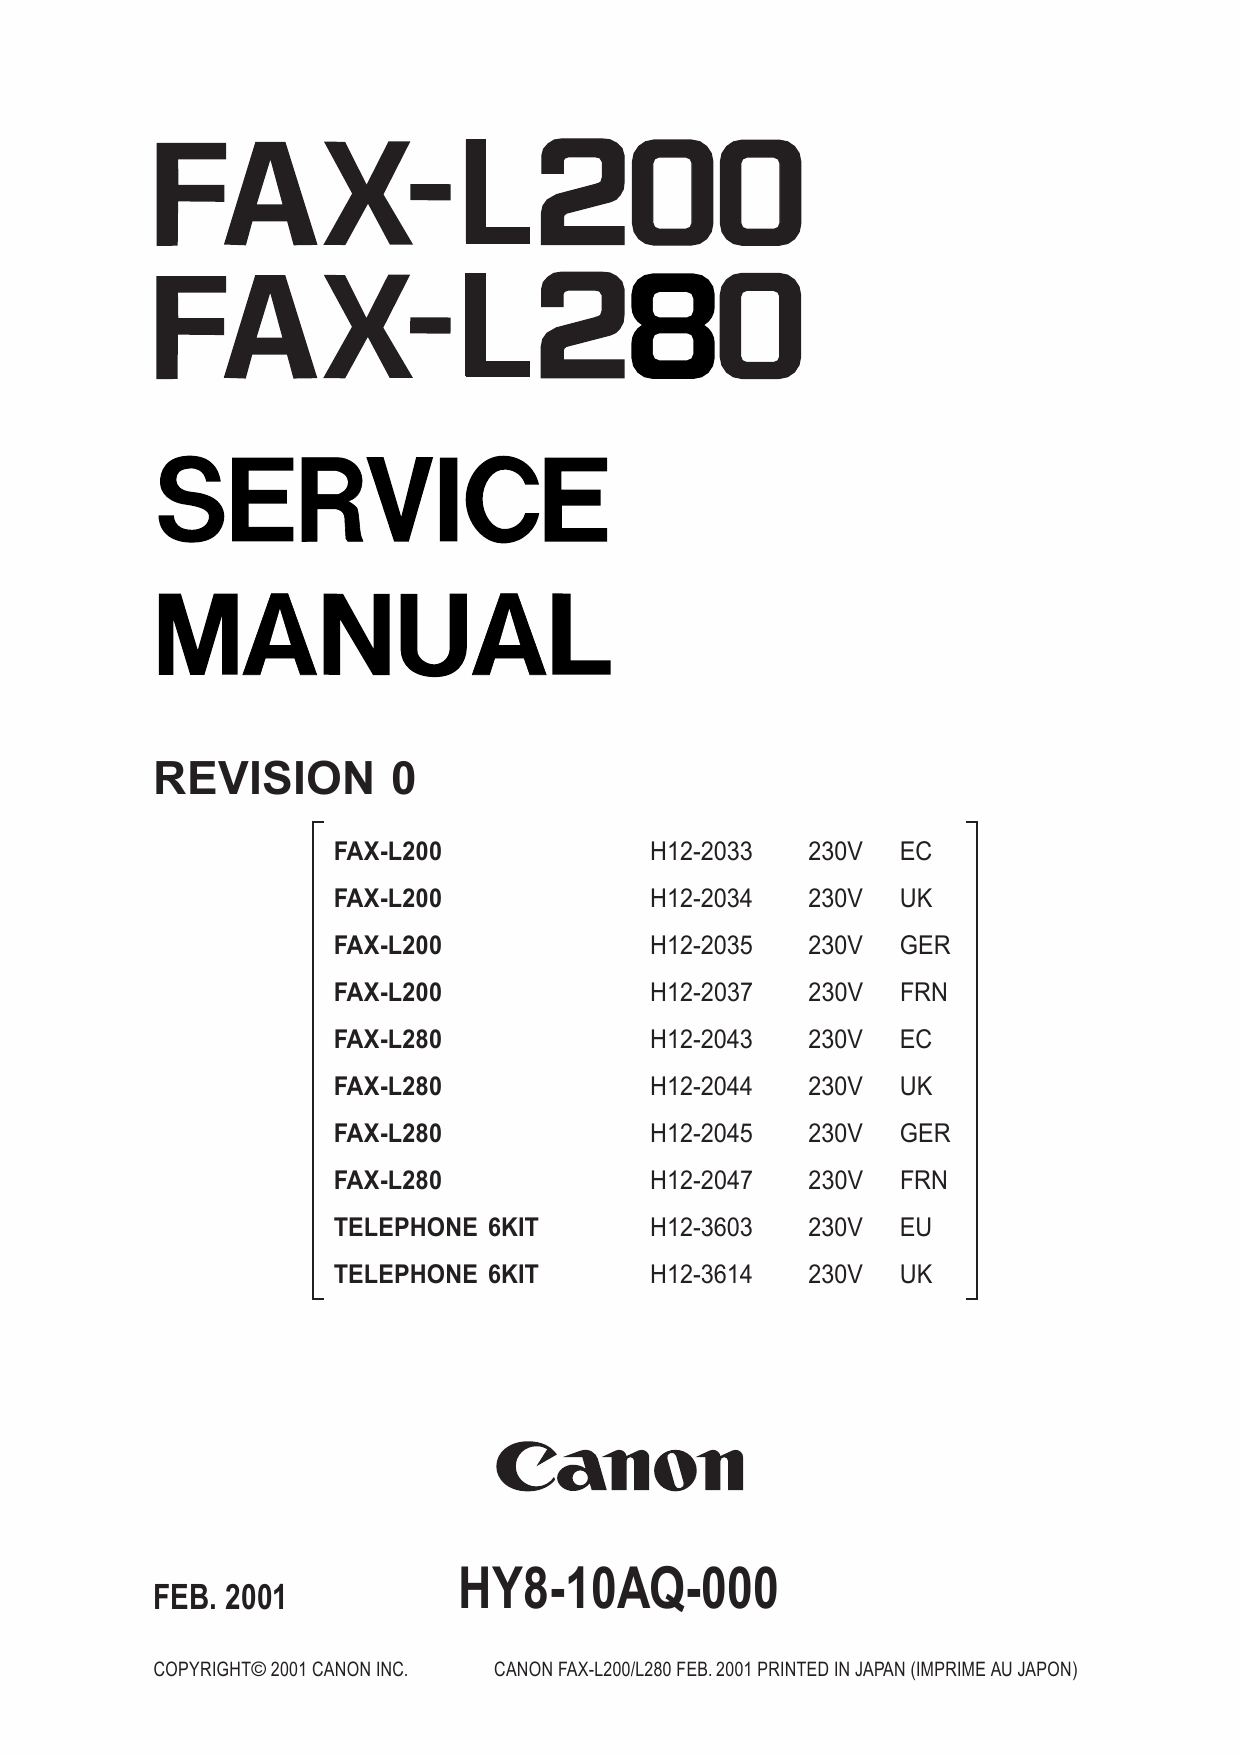 Canon FAX L280 Service Manual-1